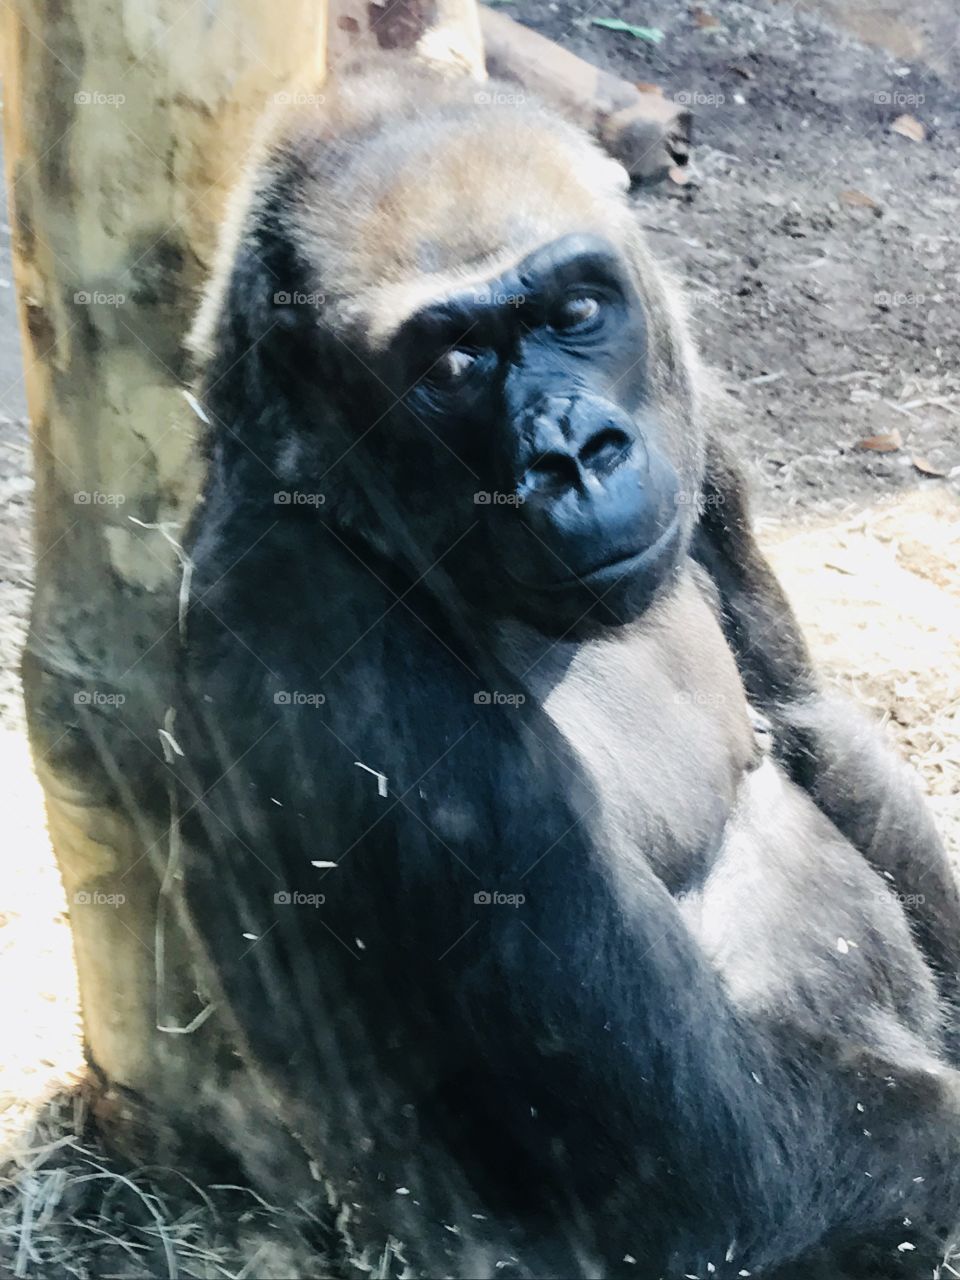 Mr gorilla is contemplating 